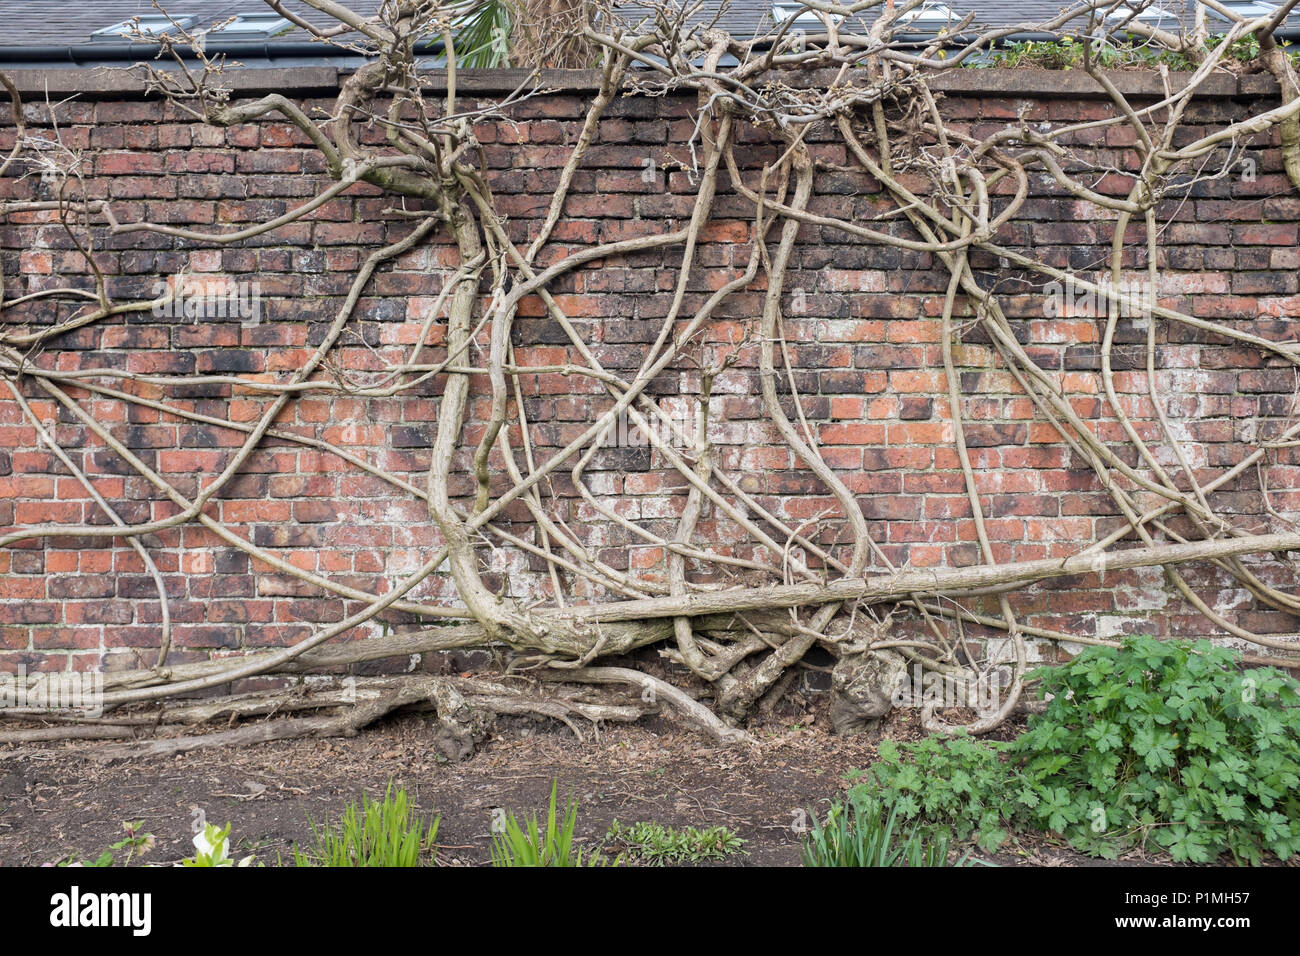 Las ramas y los tallos de glicinas que interrelaciona a una pared de ladrillo. Casa rectoral Jardines, Didsbury, Manchester, Reino Unido Foto de stock